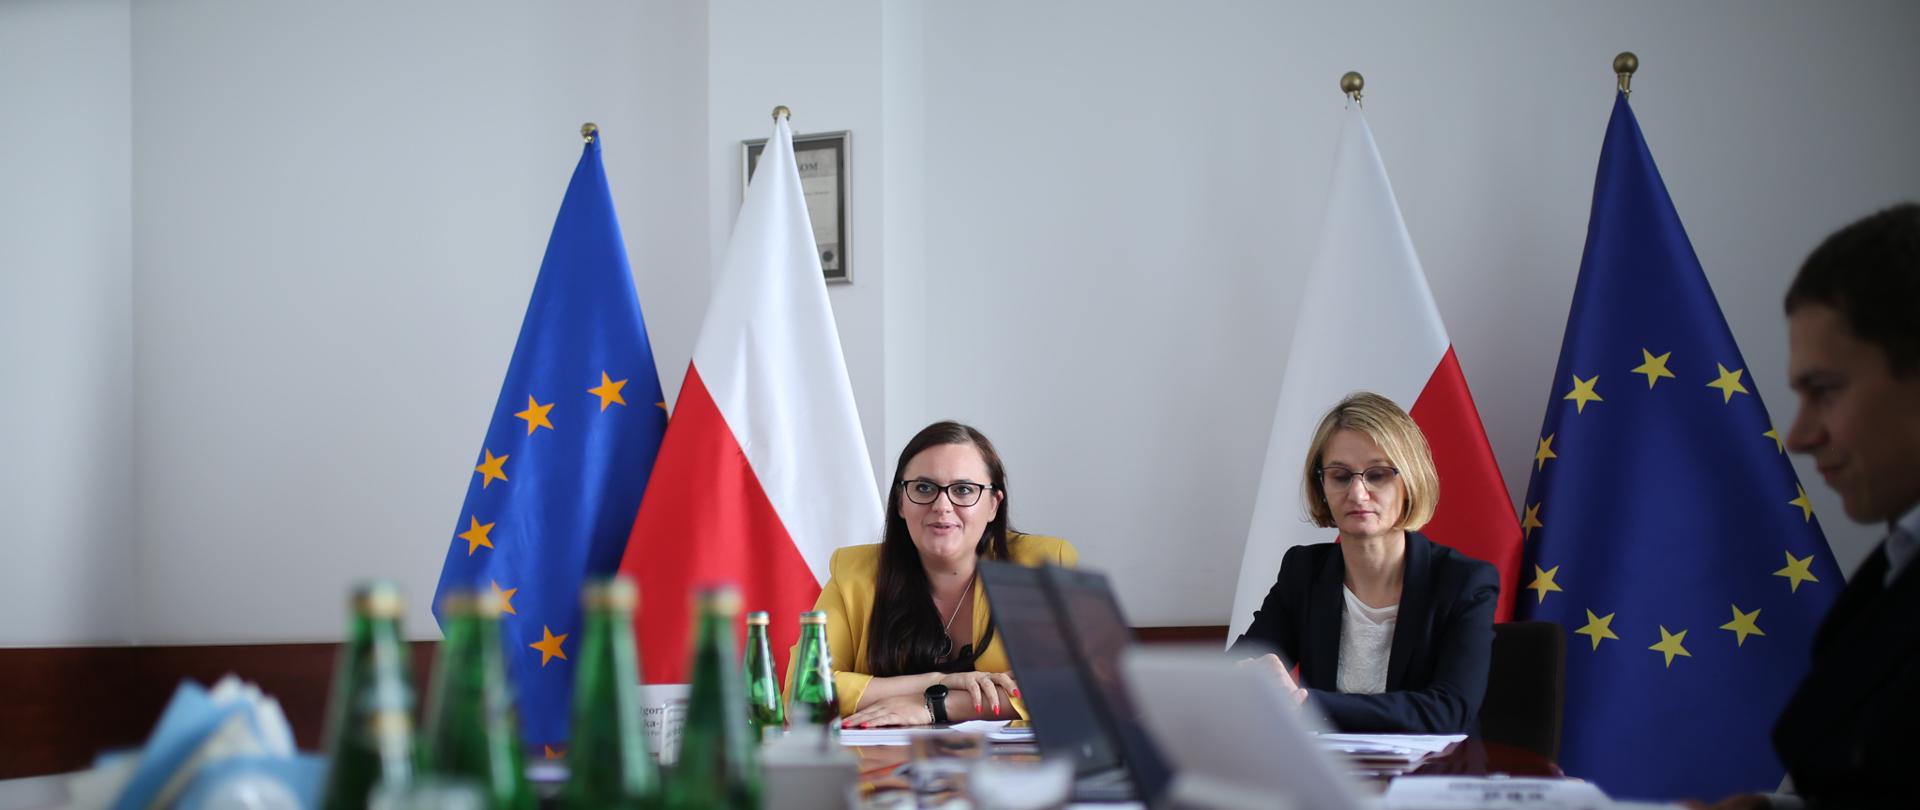 Na zdjęciu trzy osoby siedzą przy stole konferencyjnym, za nimi flagi Polski i Unii Europejskiej